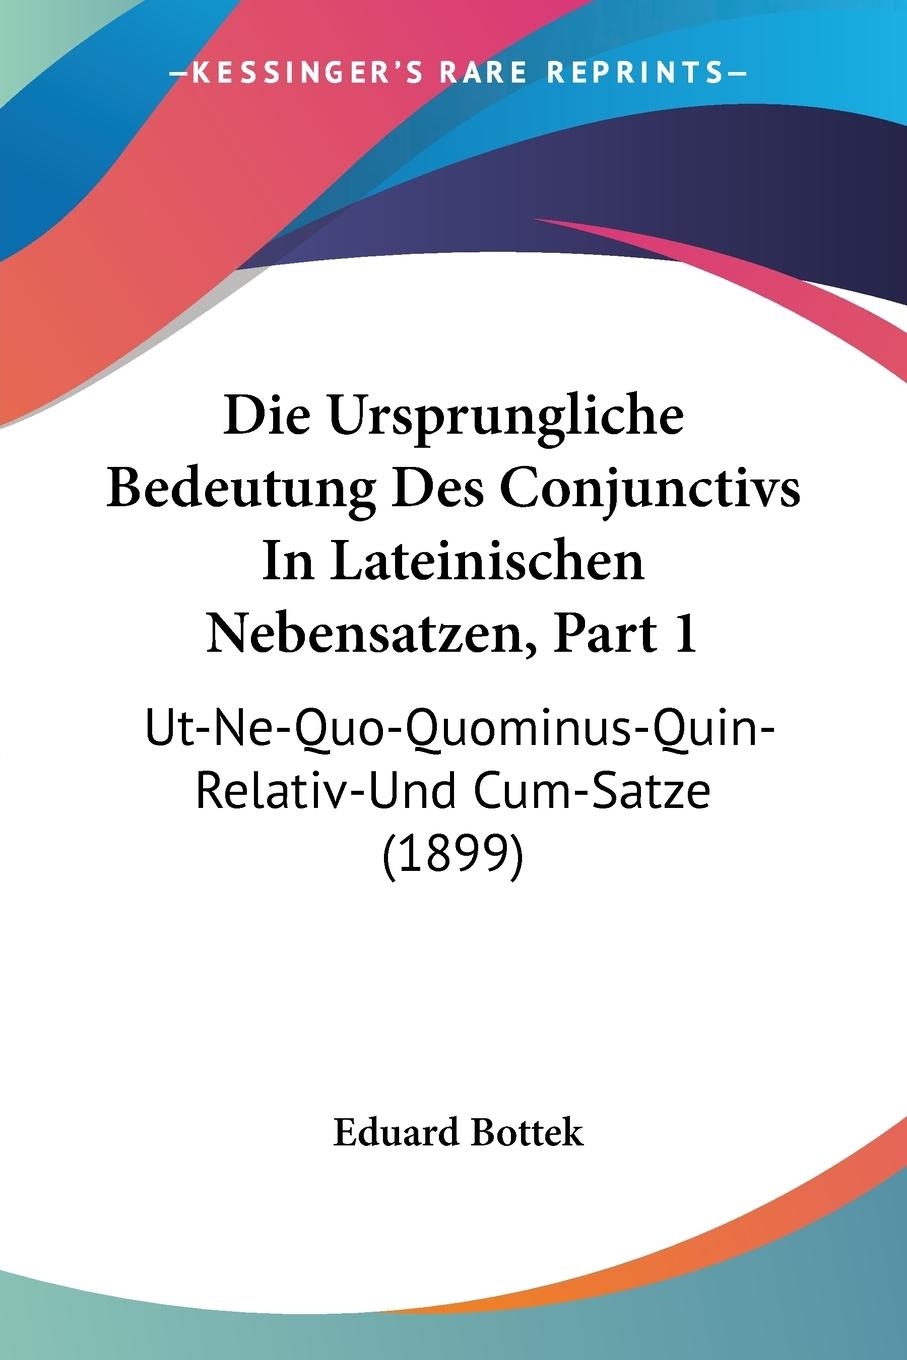 Die Ursprungliche Bedeutung Des Conjunctivs In Lateinischen Nebensatzen, Part 1 - Bottek, Eduard